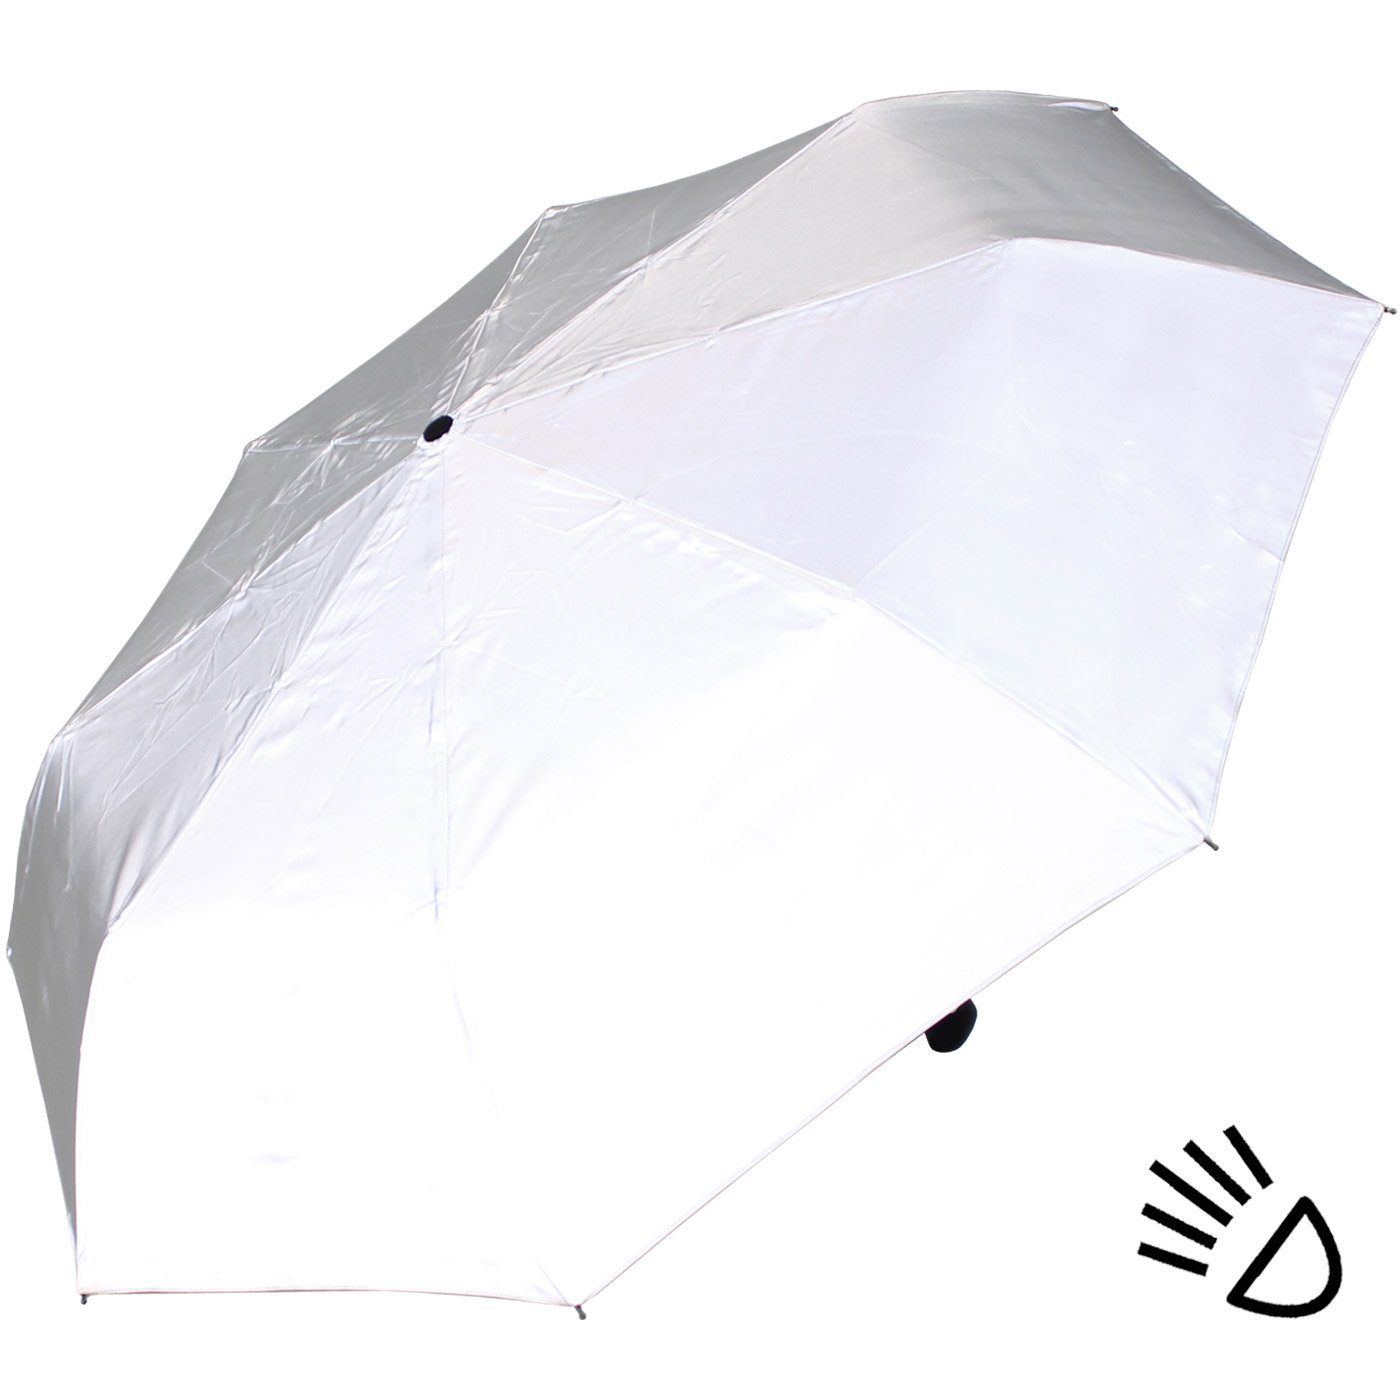 Class stark ganze Material Automatik, iX-brella Regenschirm einem aus stabiler First mit reflektierenden Dach Taschenregenschirm besteht das